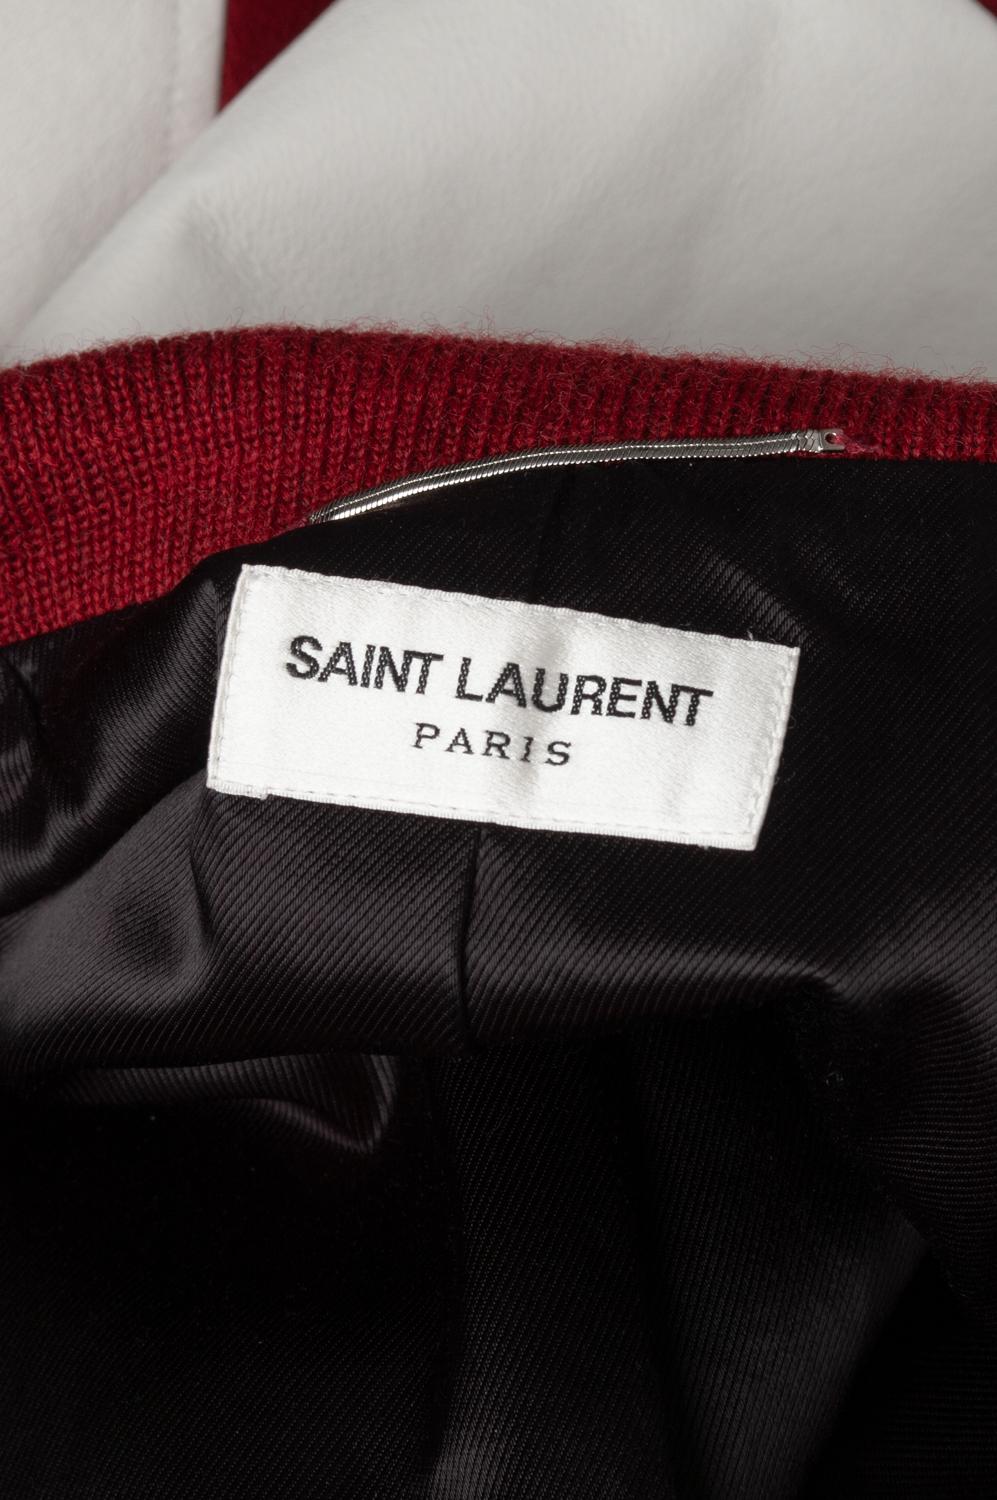  Saint Laurent Paris Men Jacket Teddy Bomber Size 44IT (Small) S609 For Sale 1